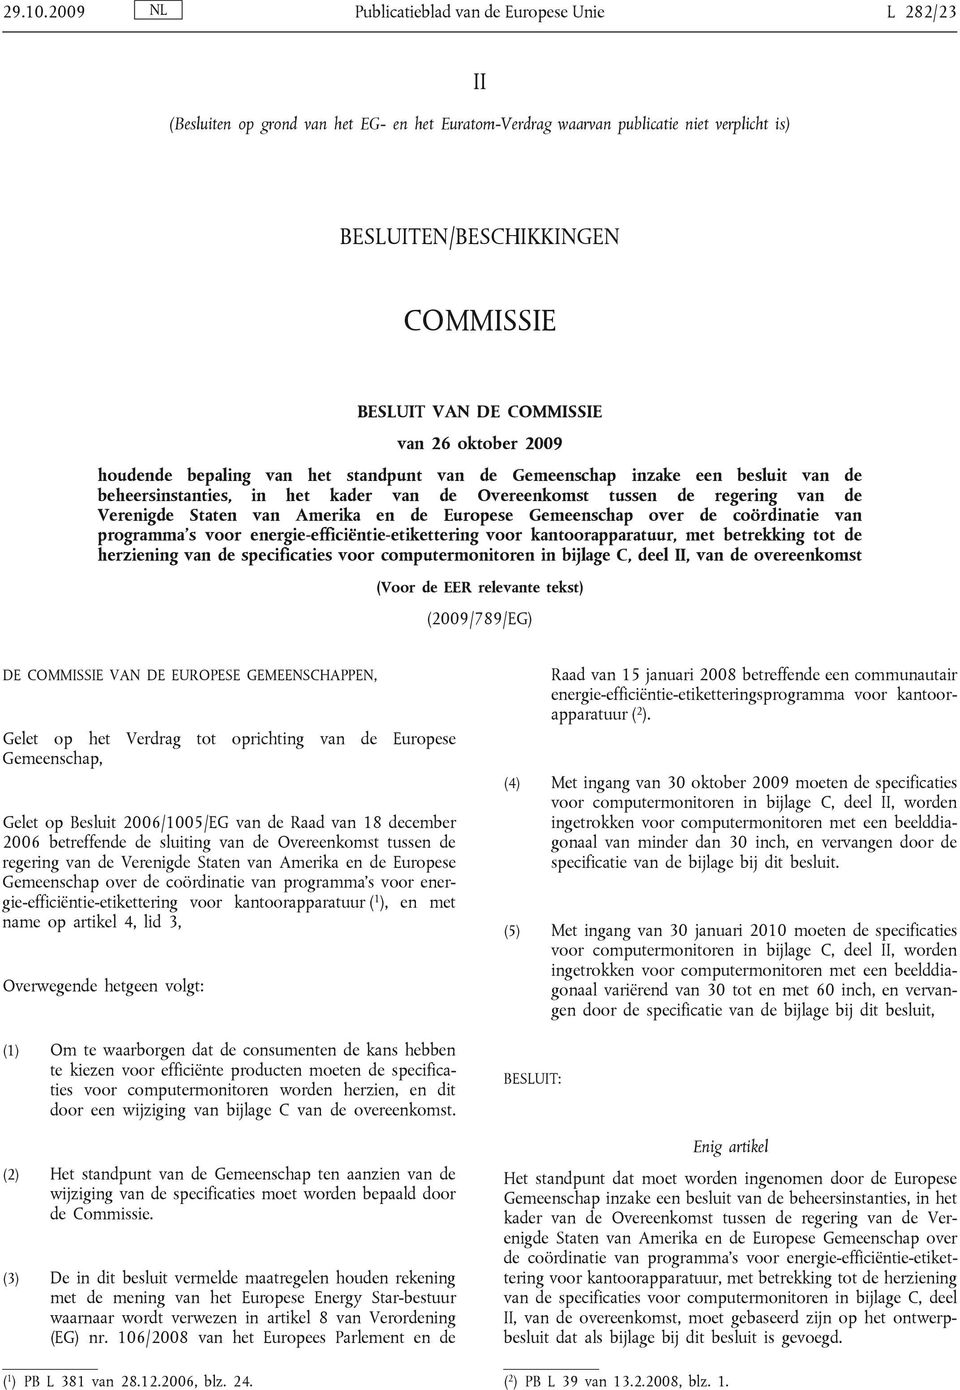 COMMISSIE van 26 oktober 2009 houdende bepaling van het standpunt van de Gemeenschap inzake een besluit van de beheersinstanties, in het kader van de Overeenkomst tussen de regering van de Verenigde